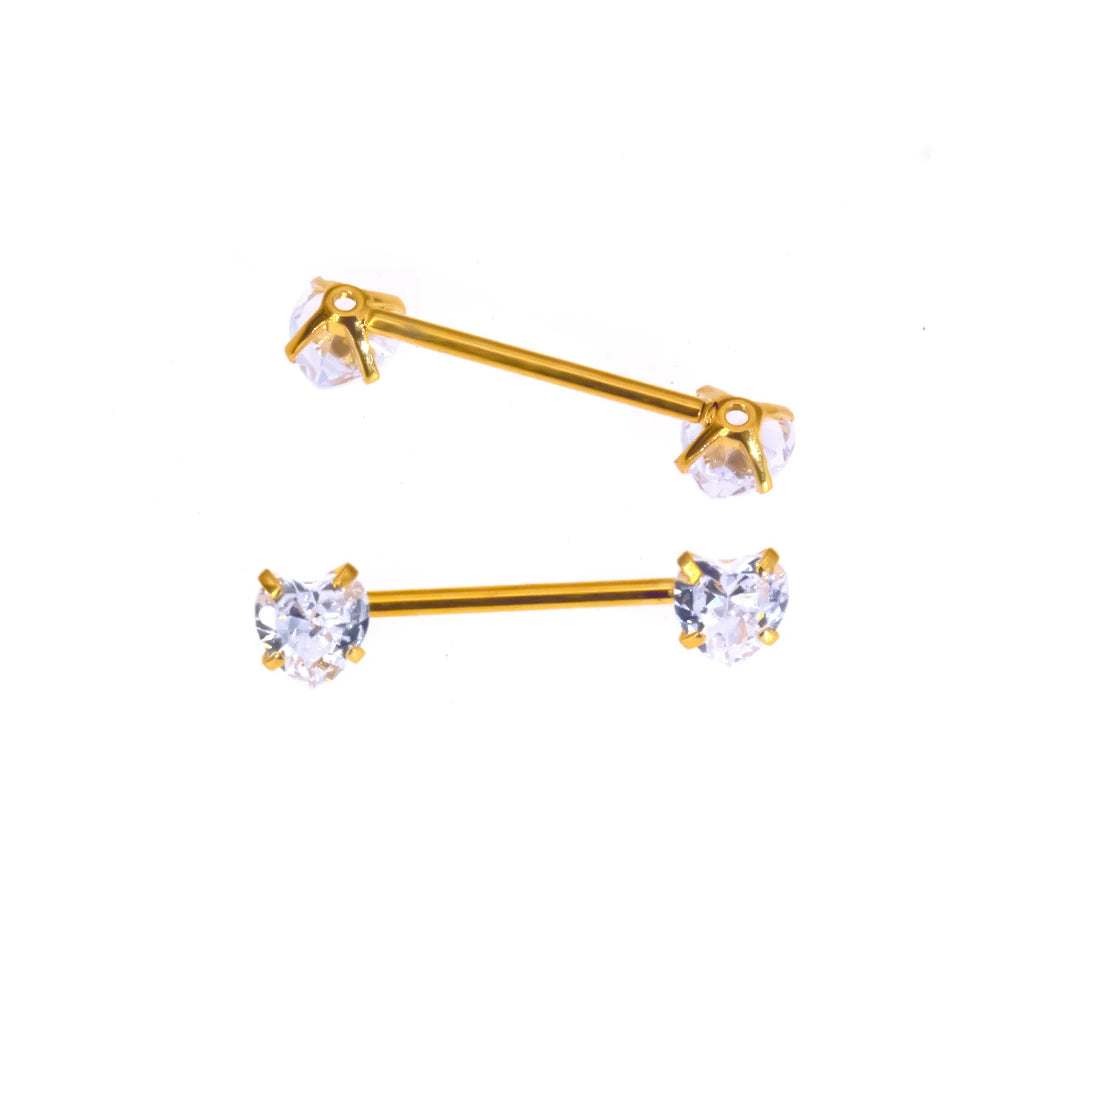 Herz-Nippelringe mit Diamanten, Gold und Silber, Titan 2 Stück Nippelpiercing-Hanteln 16G